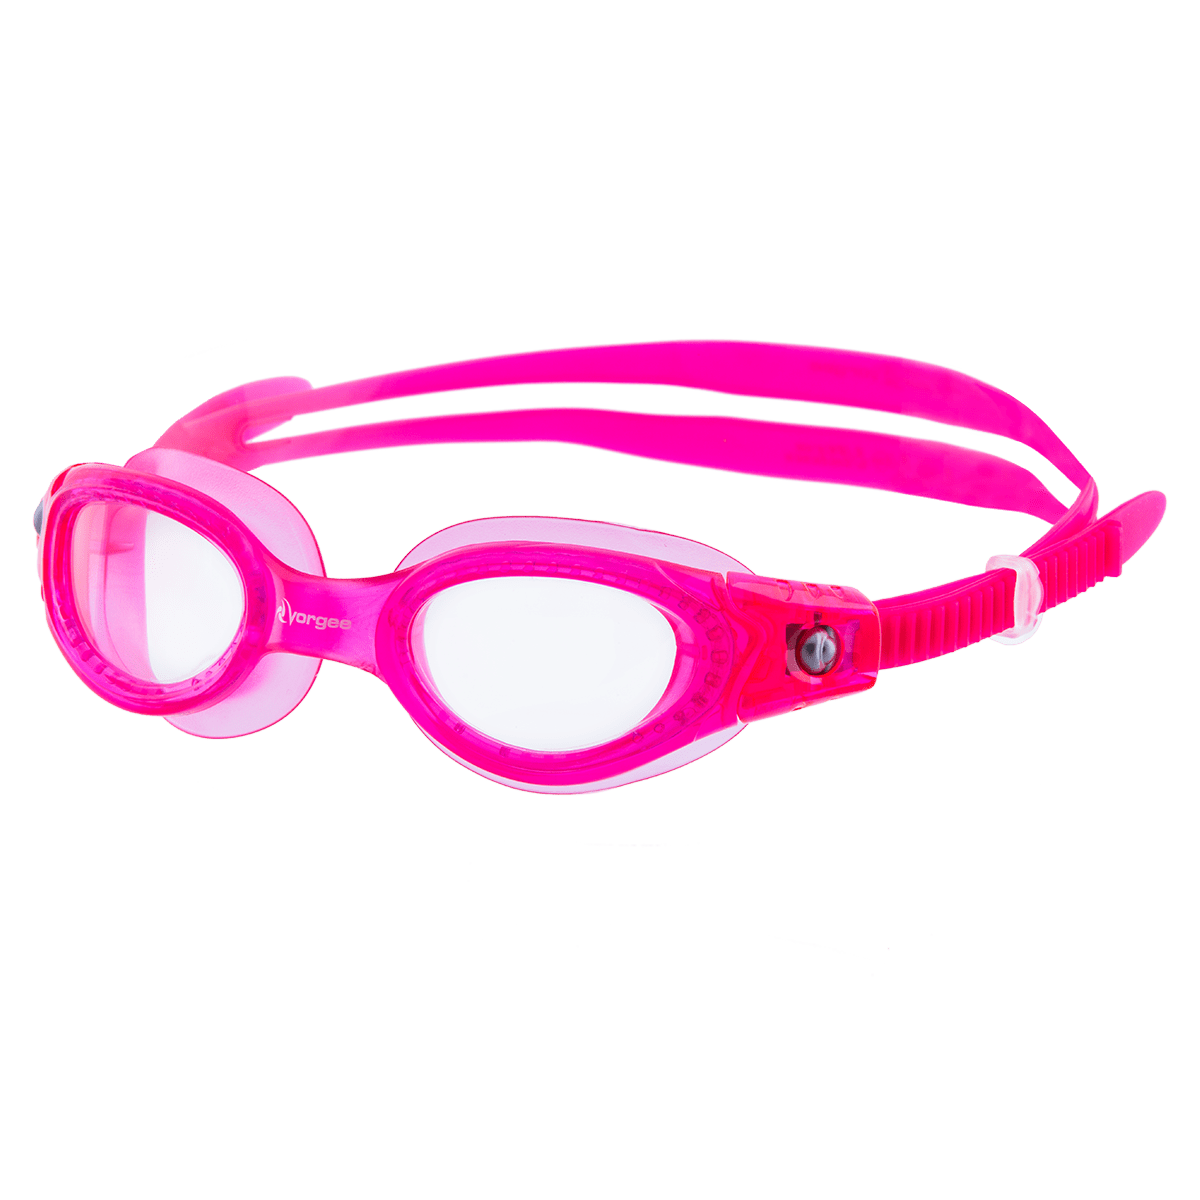 Vorgee Vortech Junior Clear Lens - Kids Swim Goggle by Vorgee - Ocean Junction